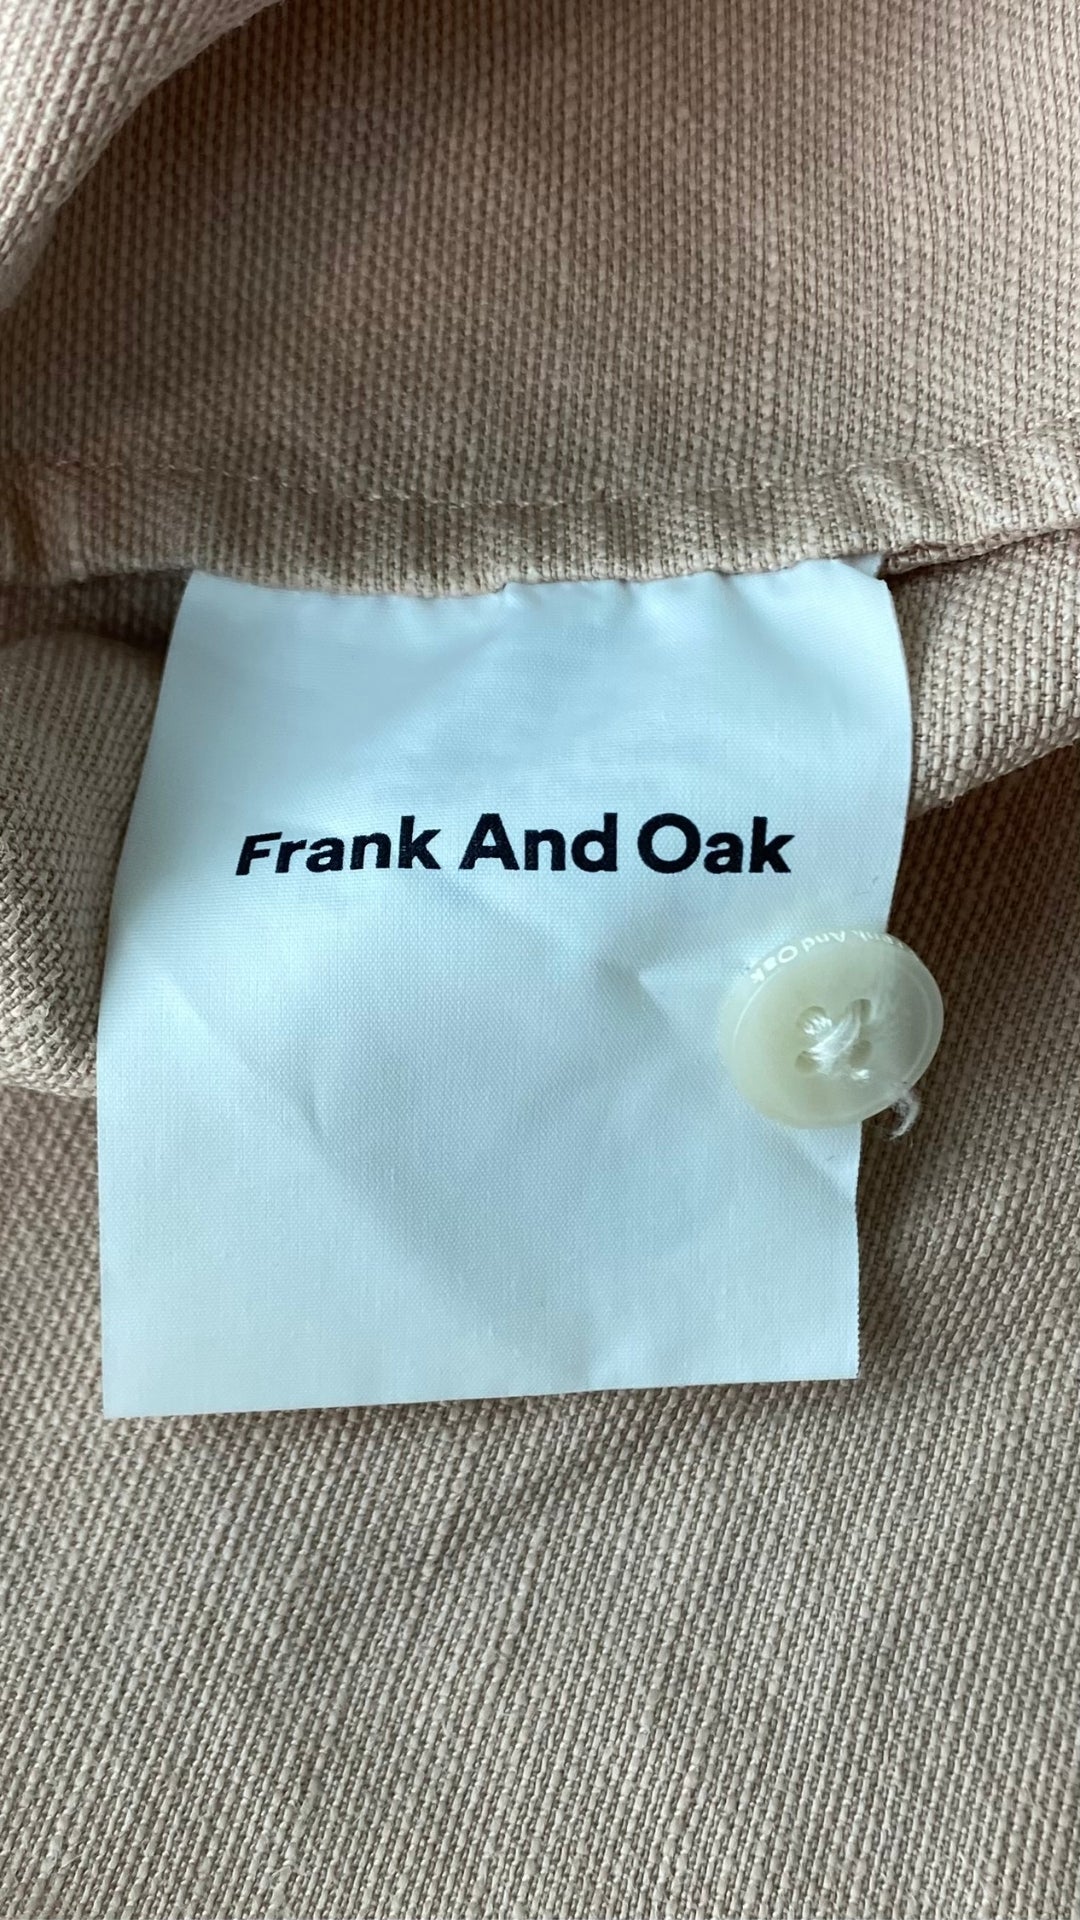 Robe seconde main en Tencel et lin vieux rose Frank And Oak, taille medium. Vue du bouton de rechange.